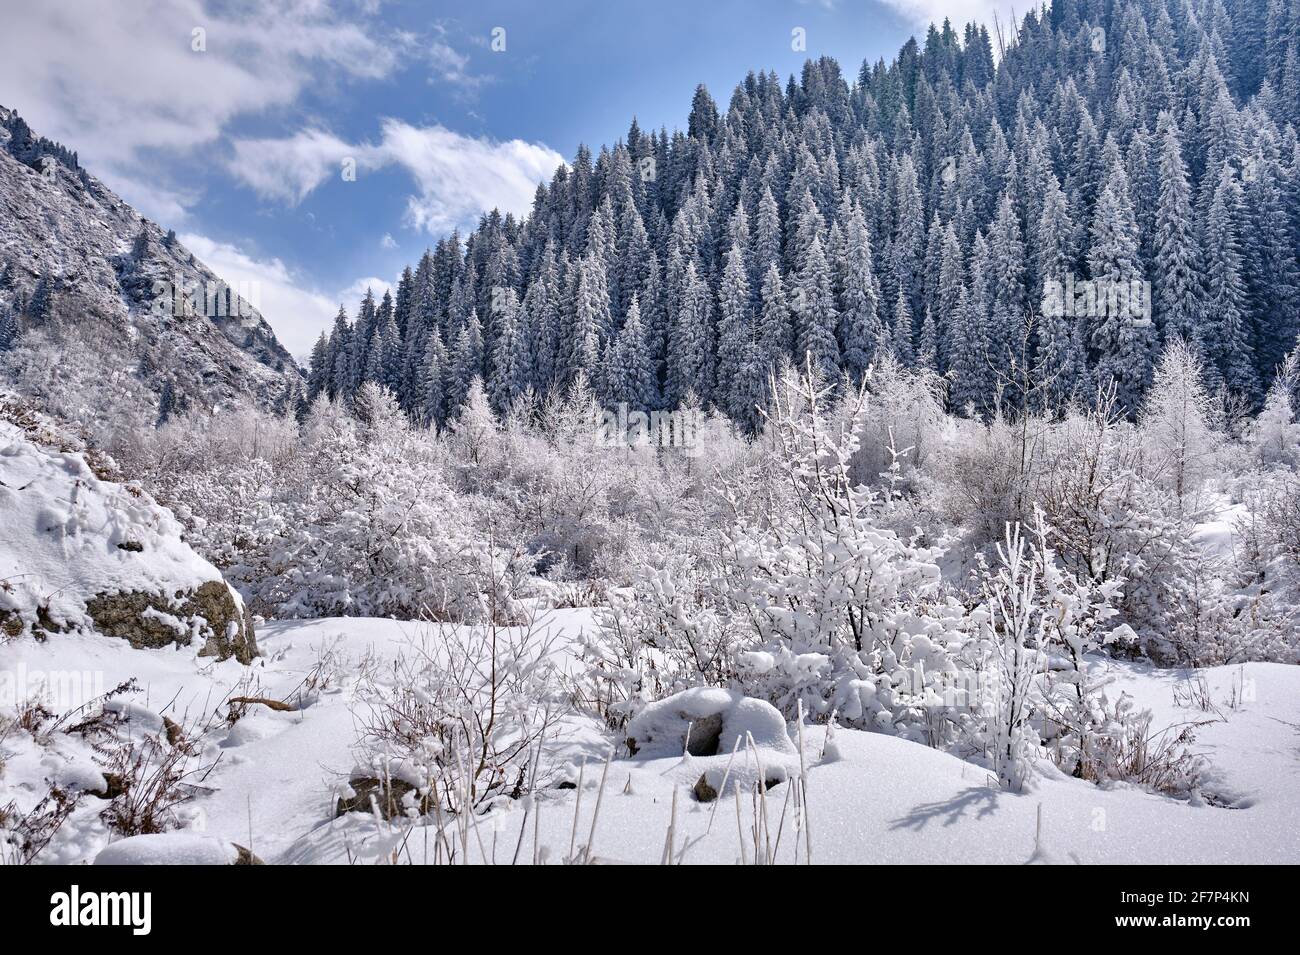 Le matin, du givre blanc et de la neige sur les branches d'un arbre dans les montagnes, sur fond de sapins enneigés et de ciel bleu avec des nuages; l'hiver fai Banque D'Images